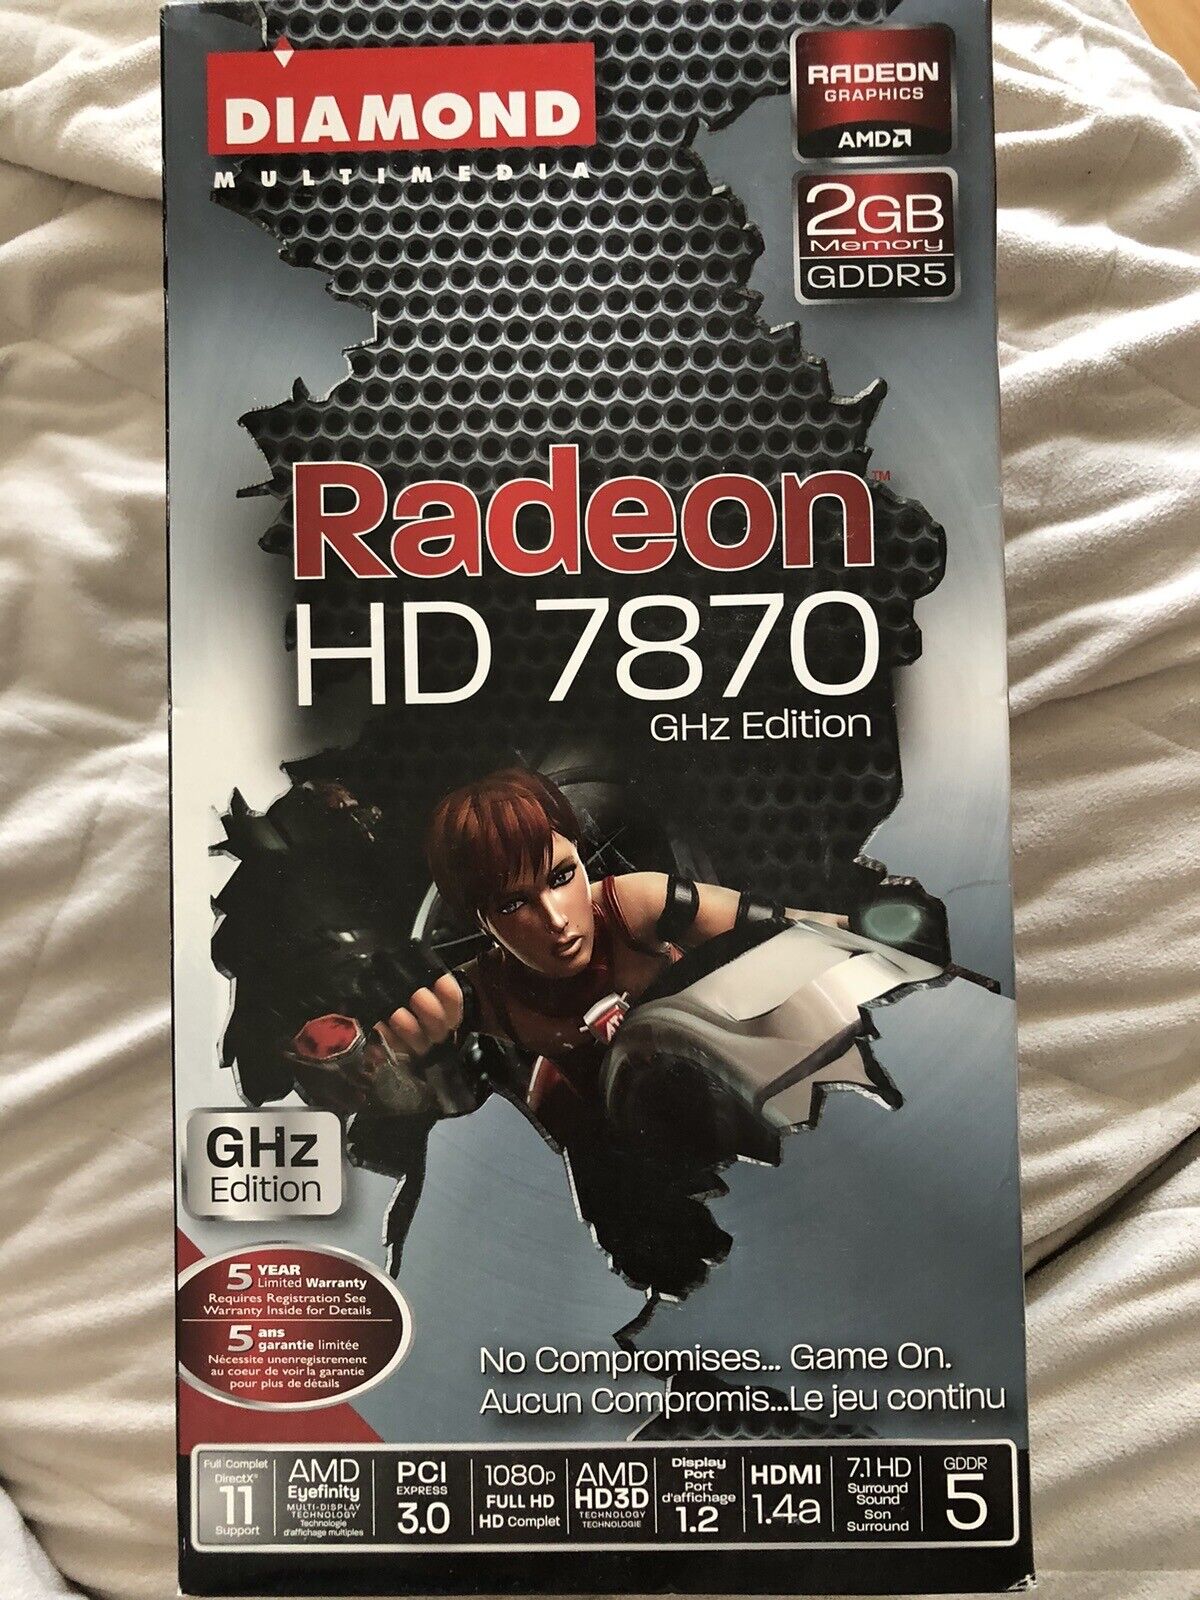 Diamond Multimedia Radeon Hd 7870 GHz Edition